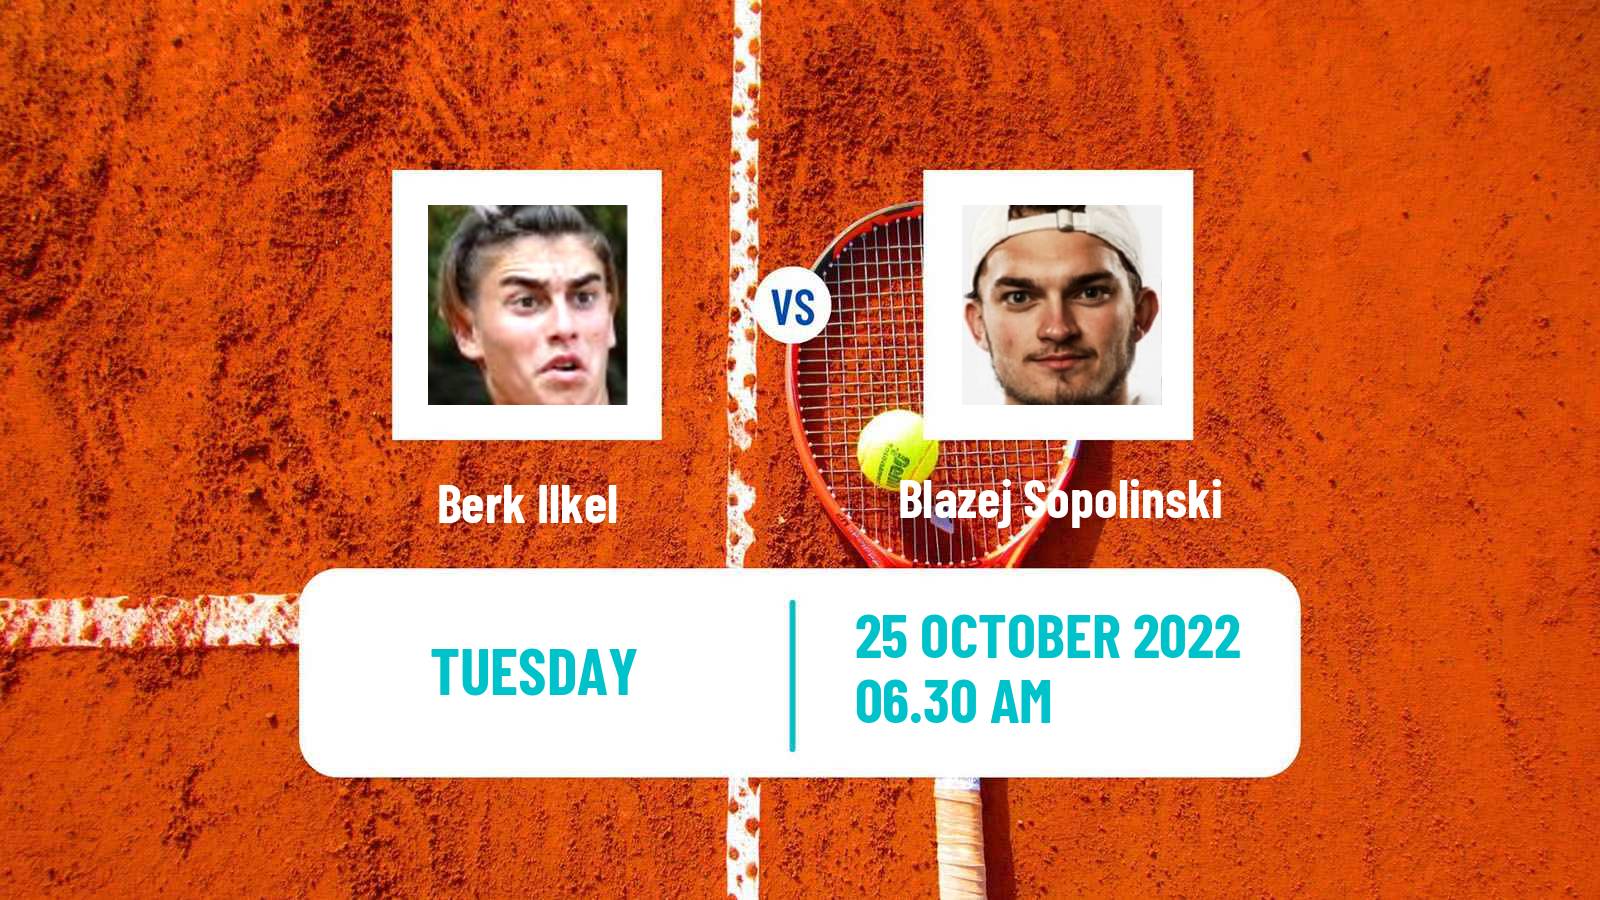 Tennis ITF Tournaments Berk Ilkel - Blazej Sopolinski